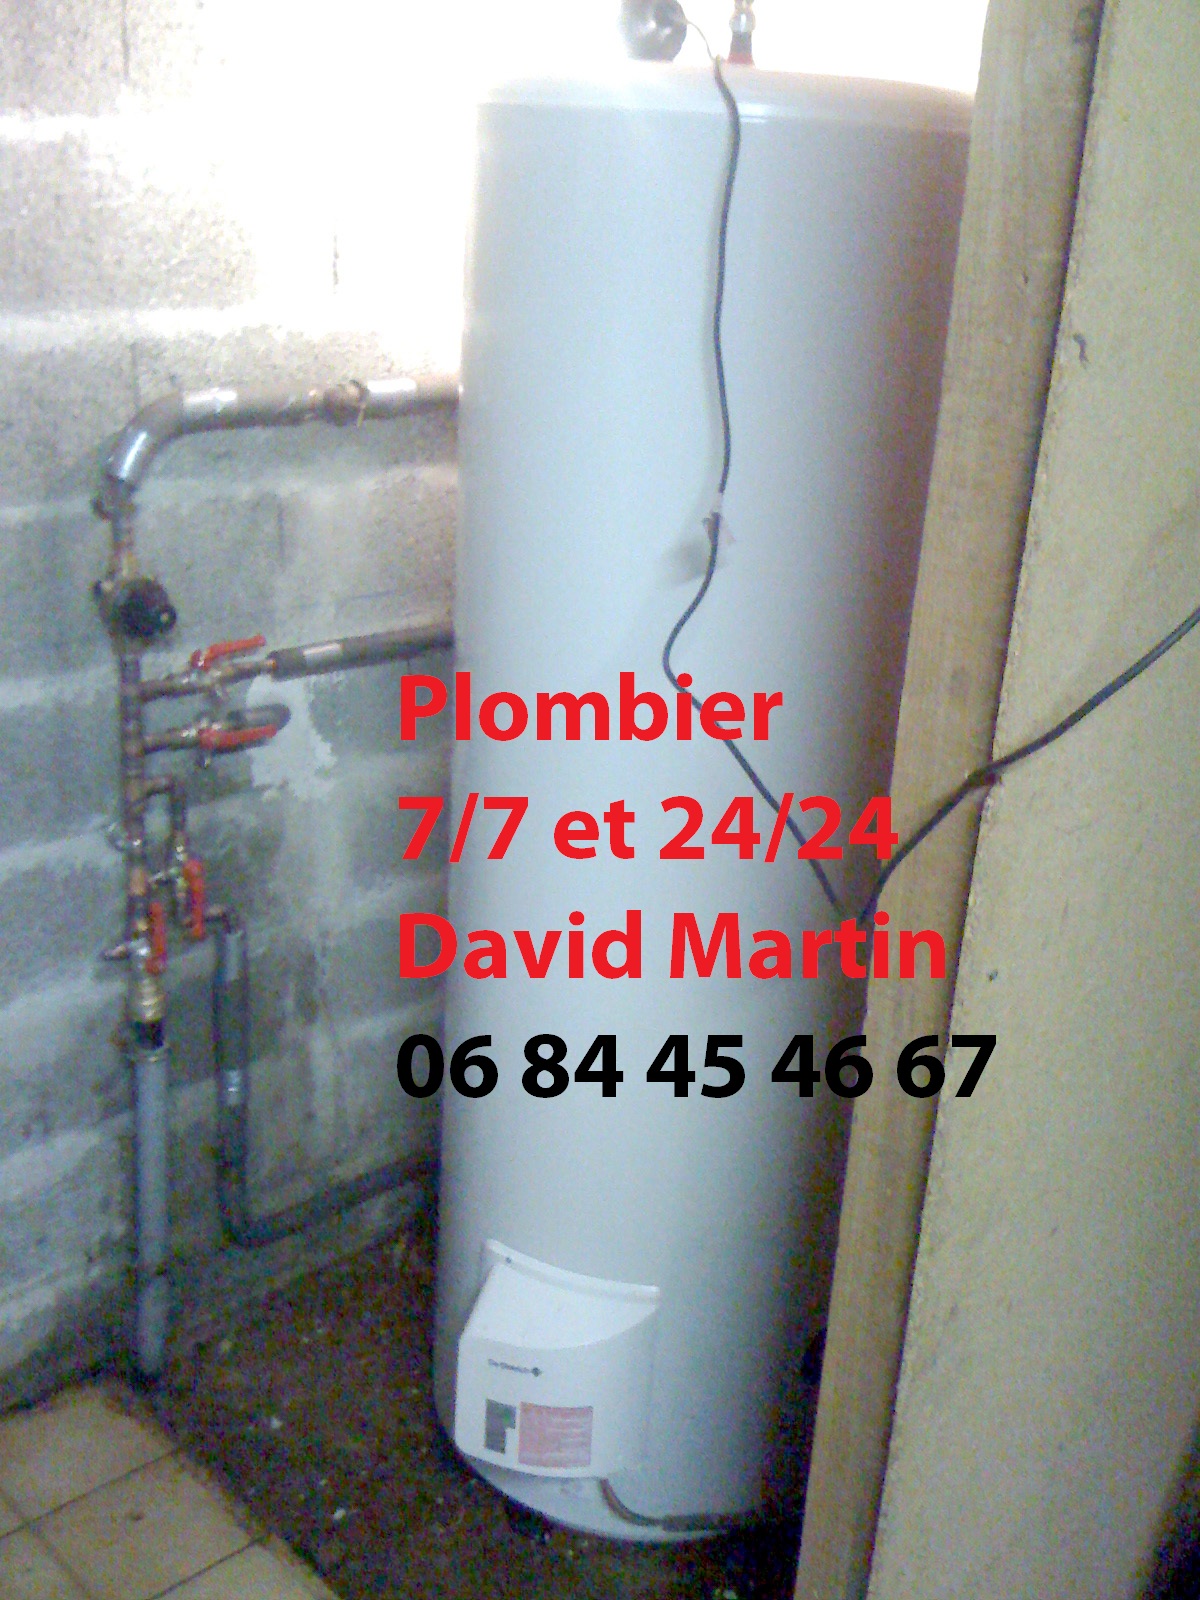 Chauffe-eau sur évier plomberie Saint-Genis-Laval 06.84.45.46.67.jpg